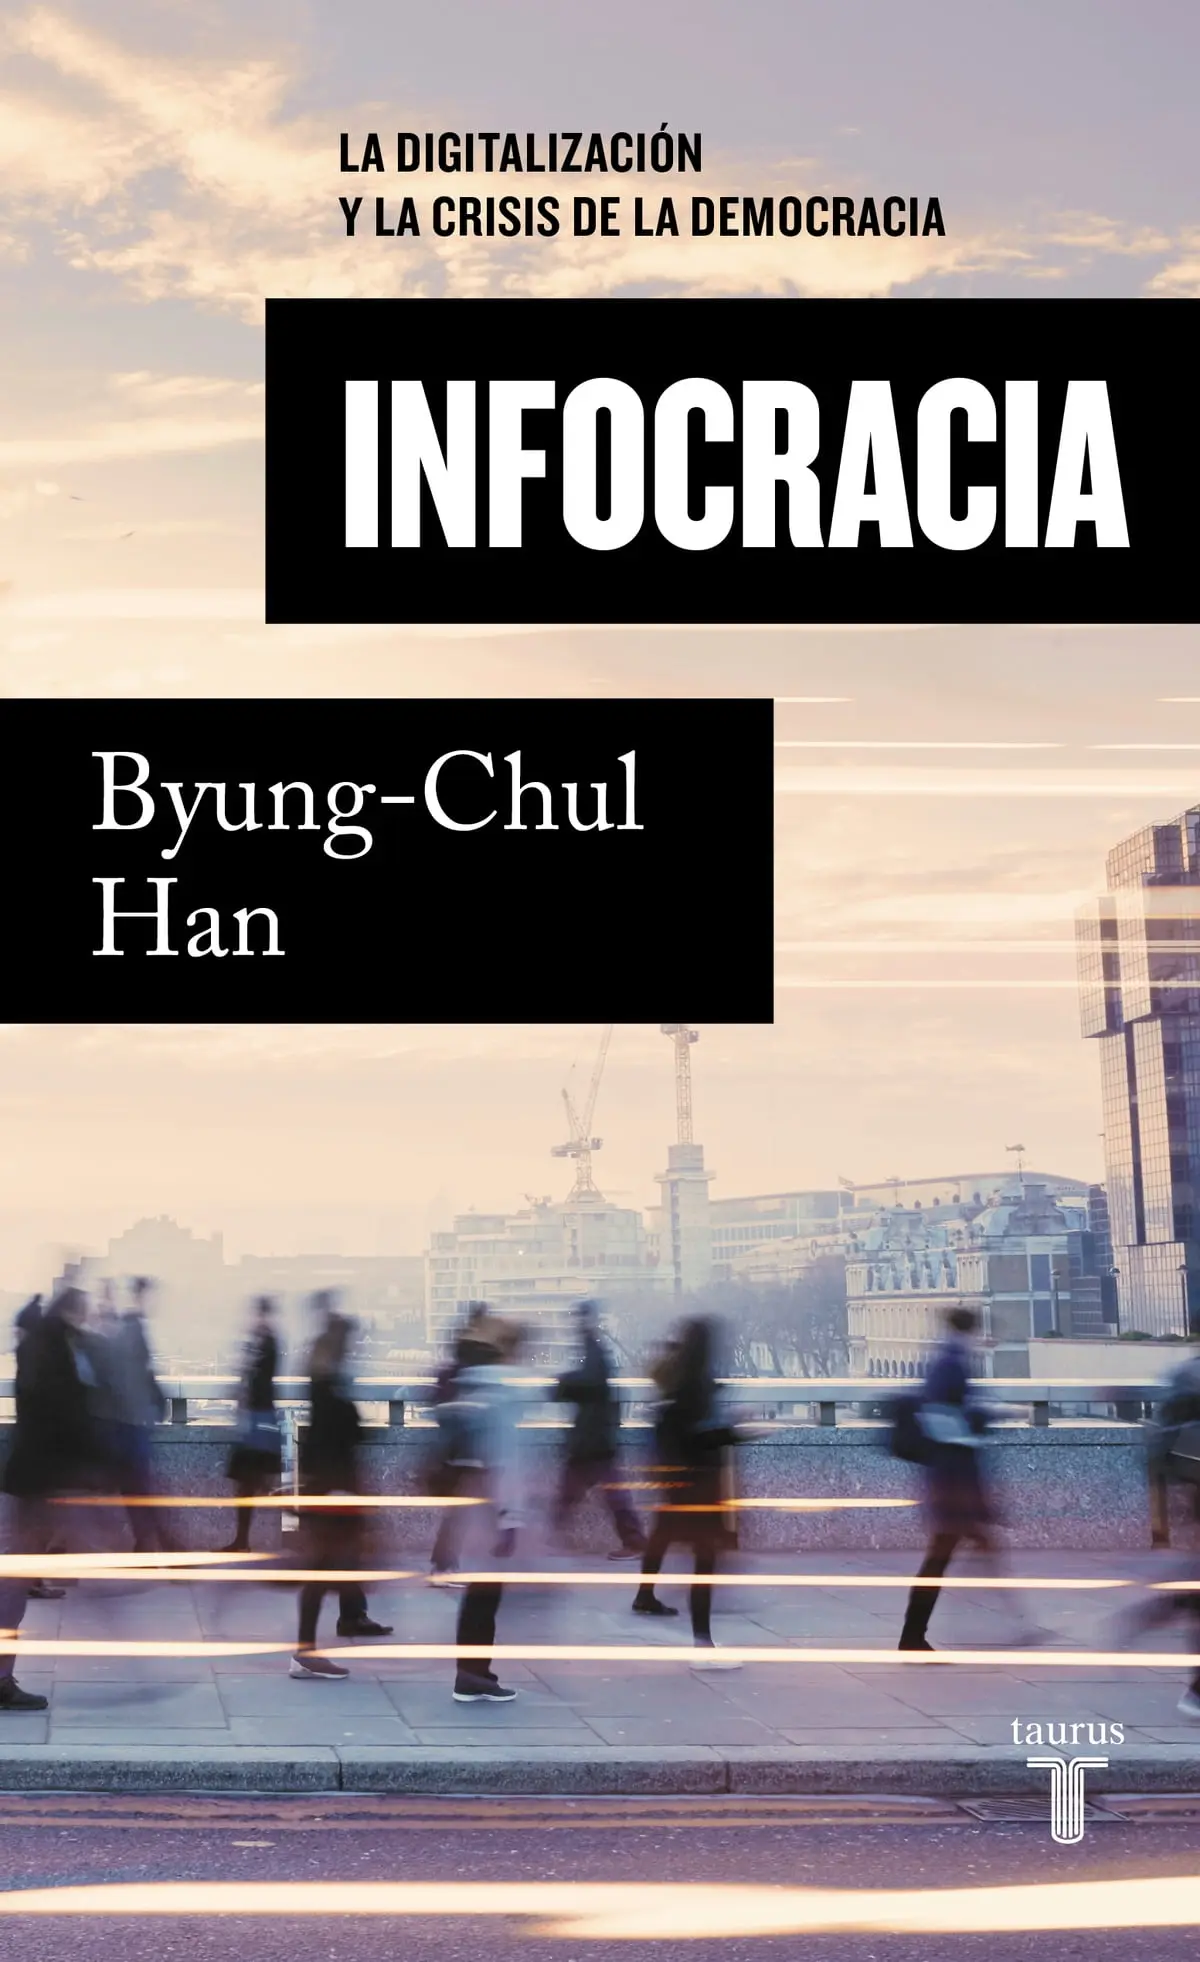 hiperculturalidad byung chul han resumen - Cuál es la tesis o el punto de vista Byung-Chul